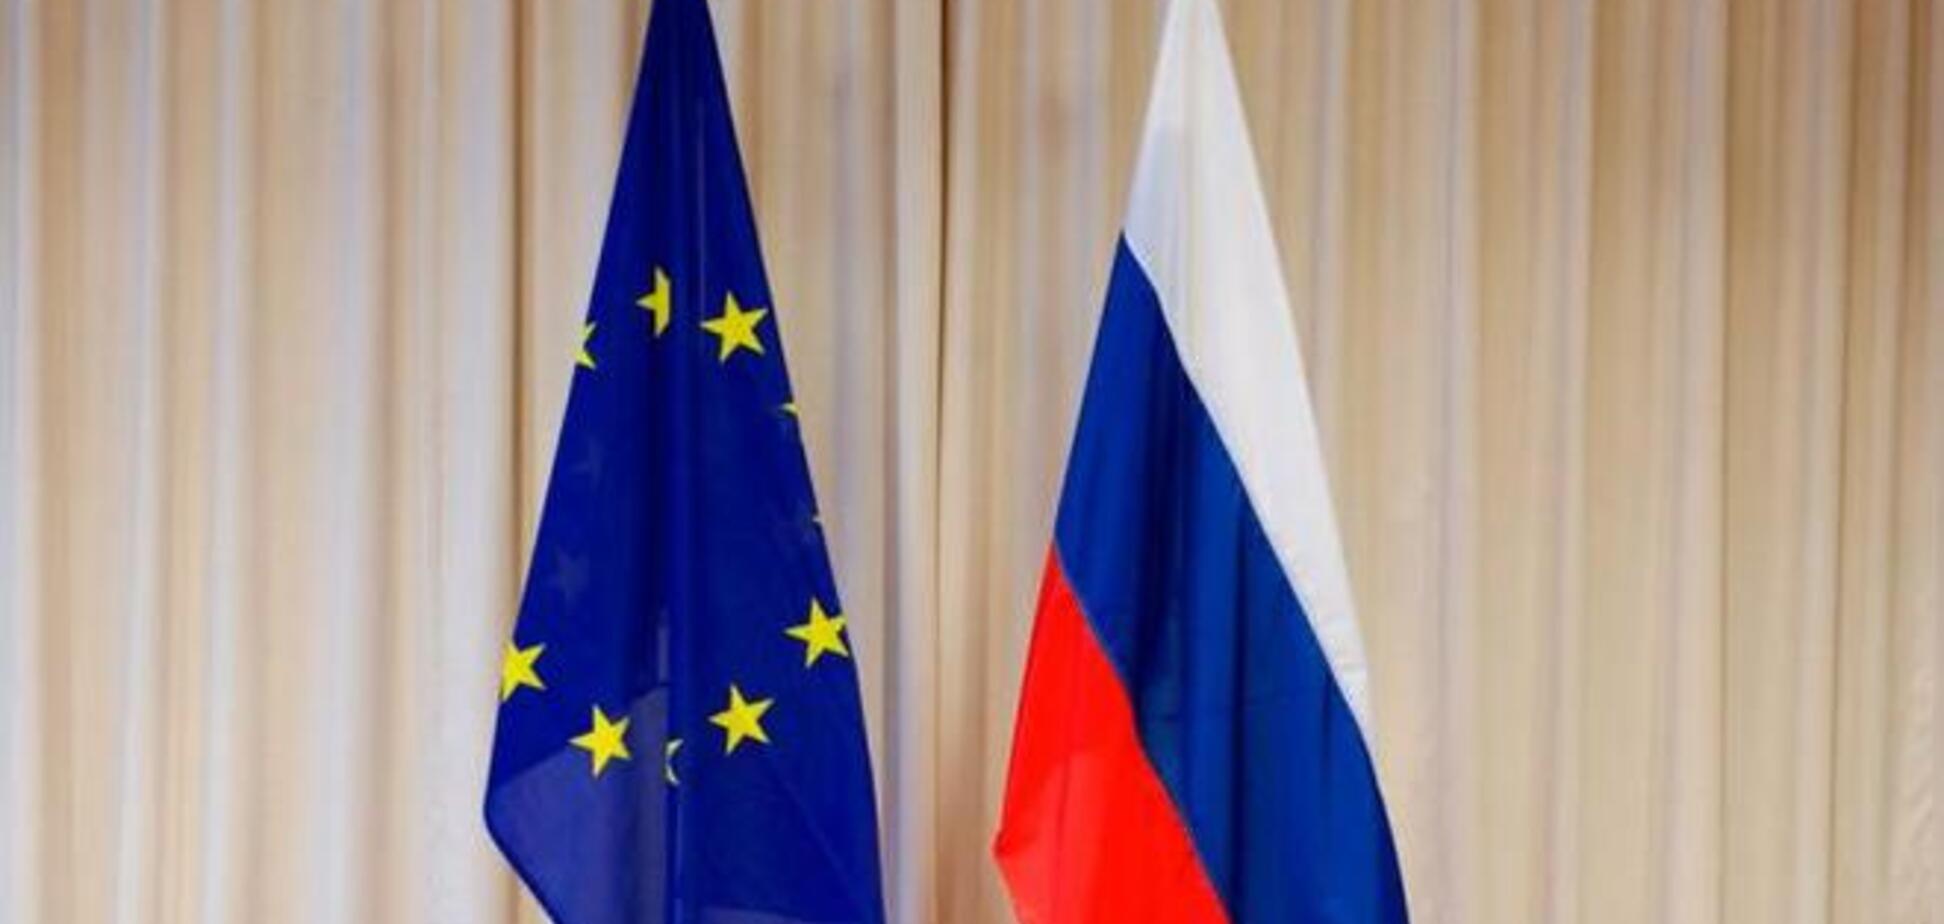 Представитель Украины при ЕС рассказал о подготовке Брюсселем новых санкций против Москвы